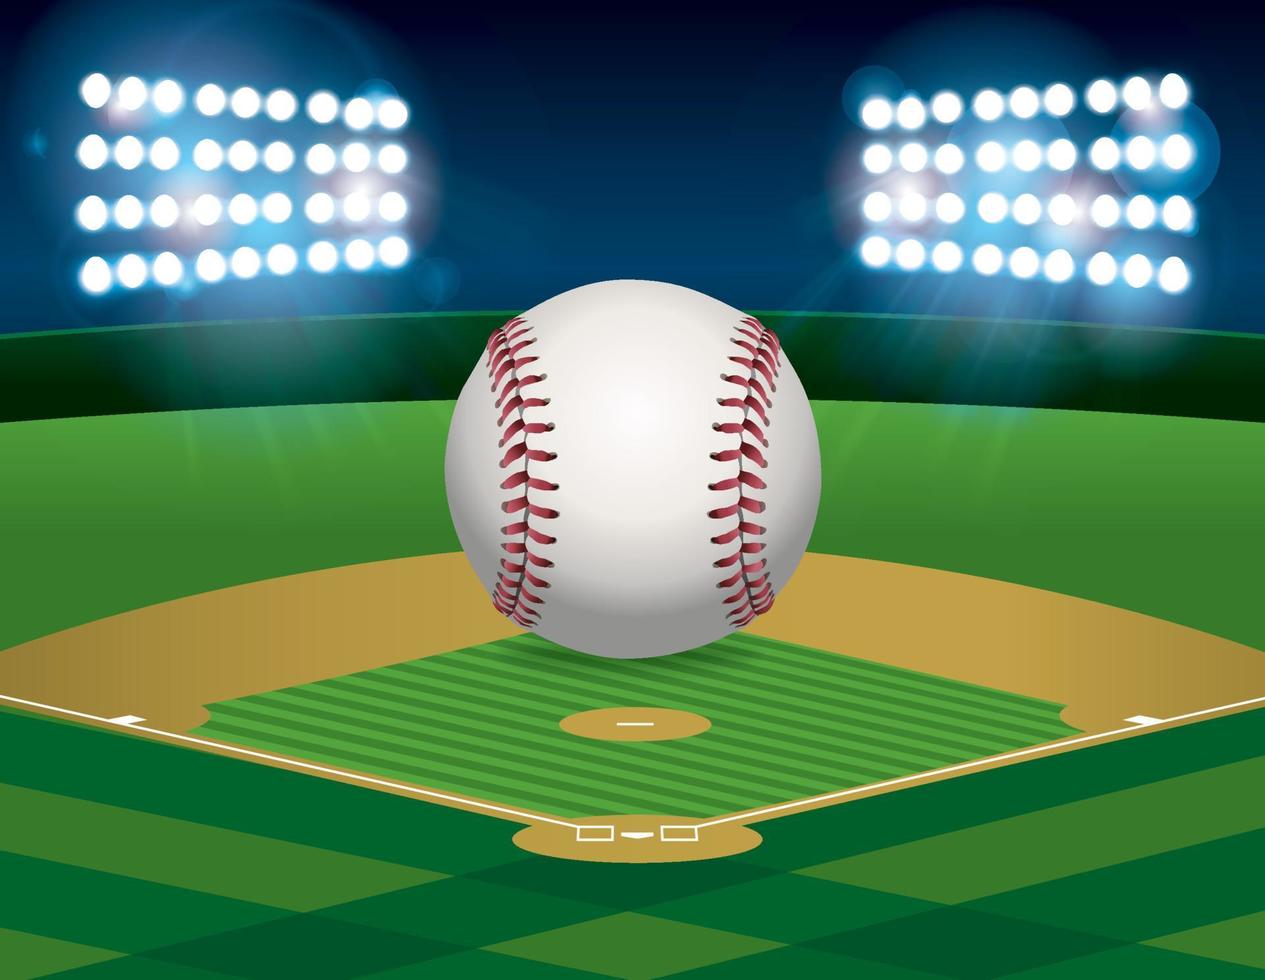 Baseball on Baseball Field Illustration vector